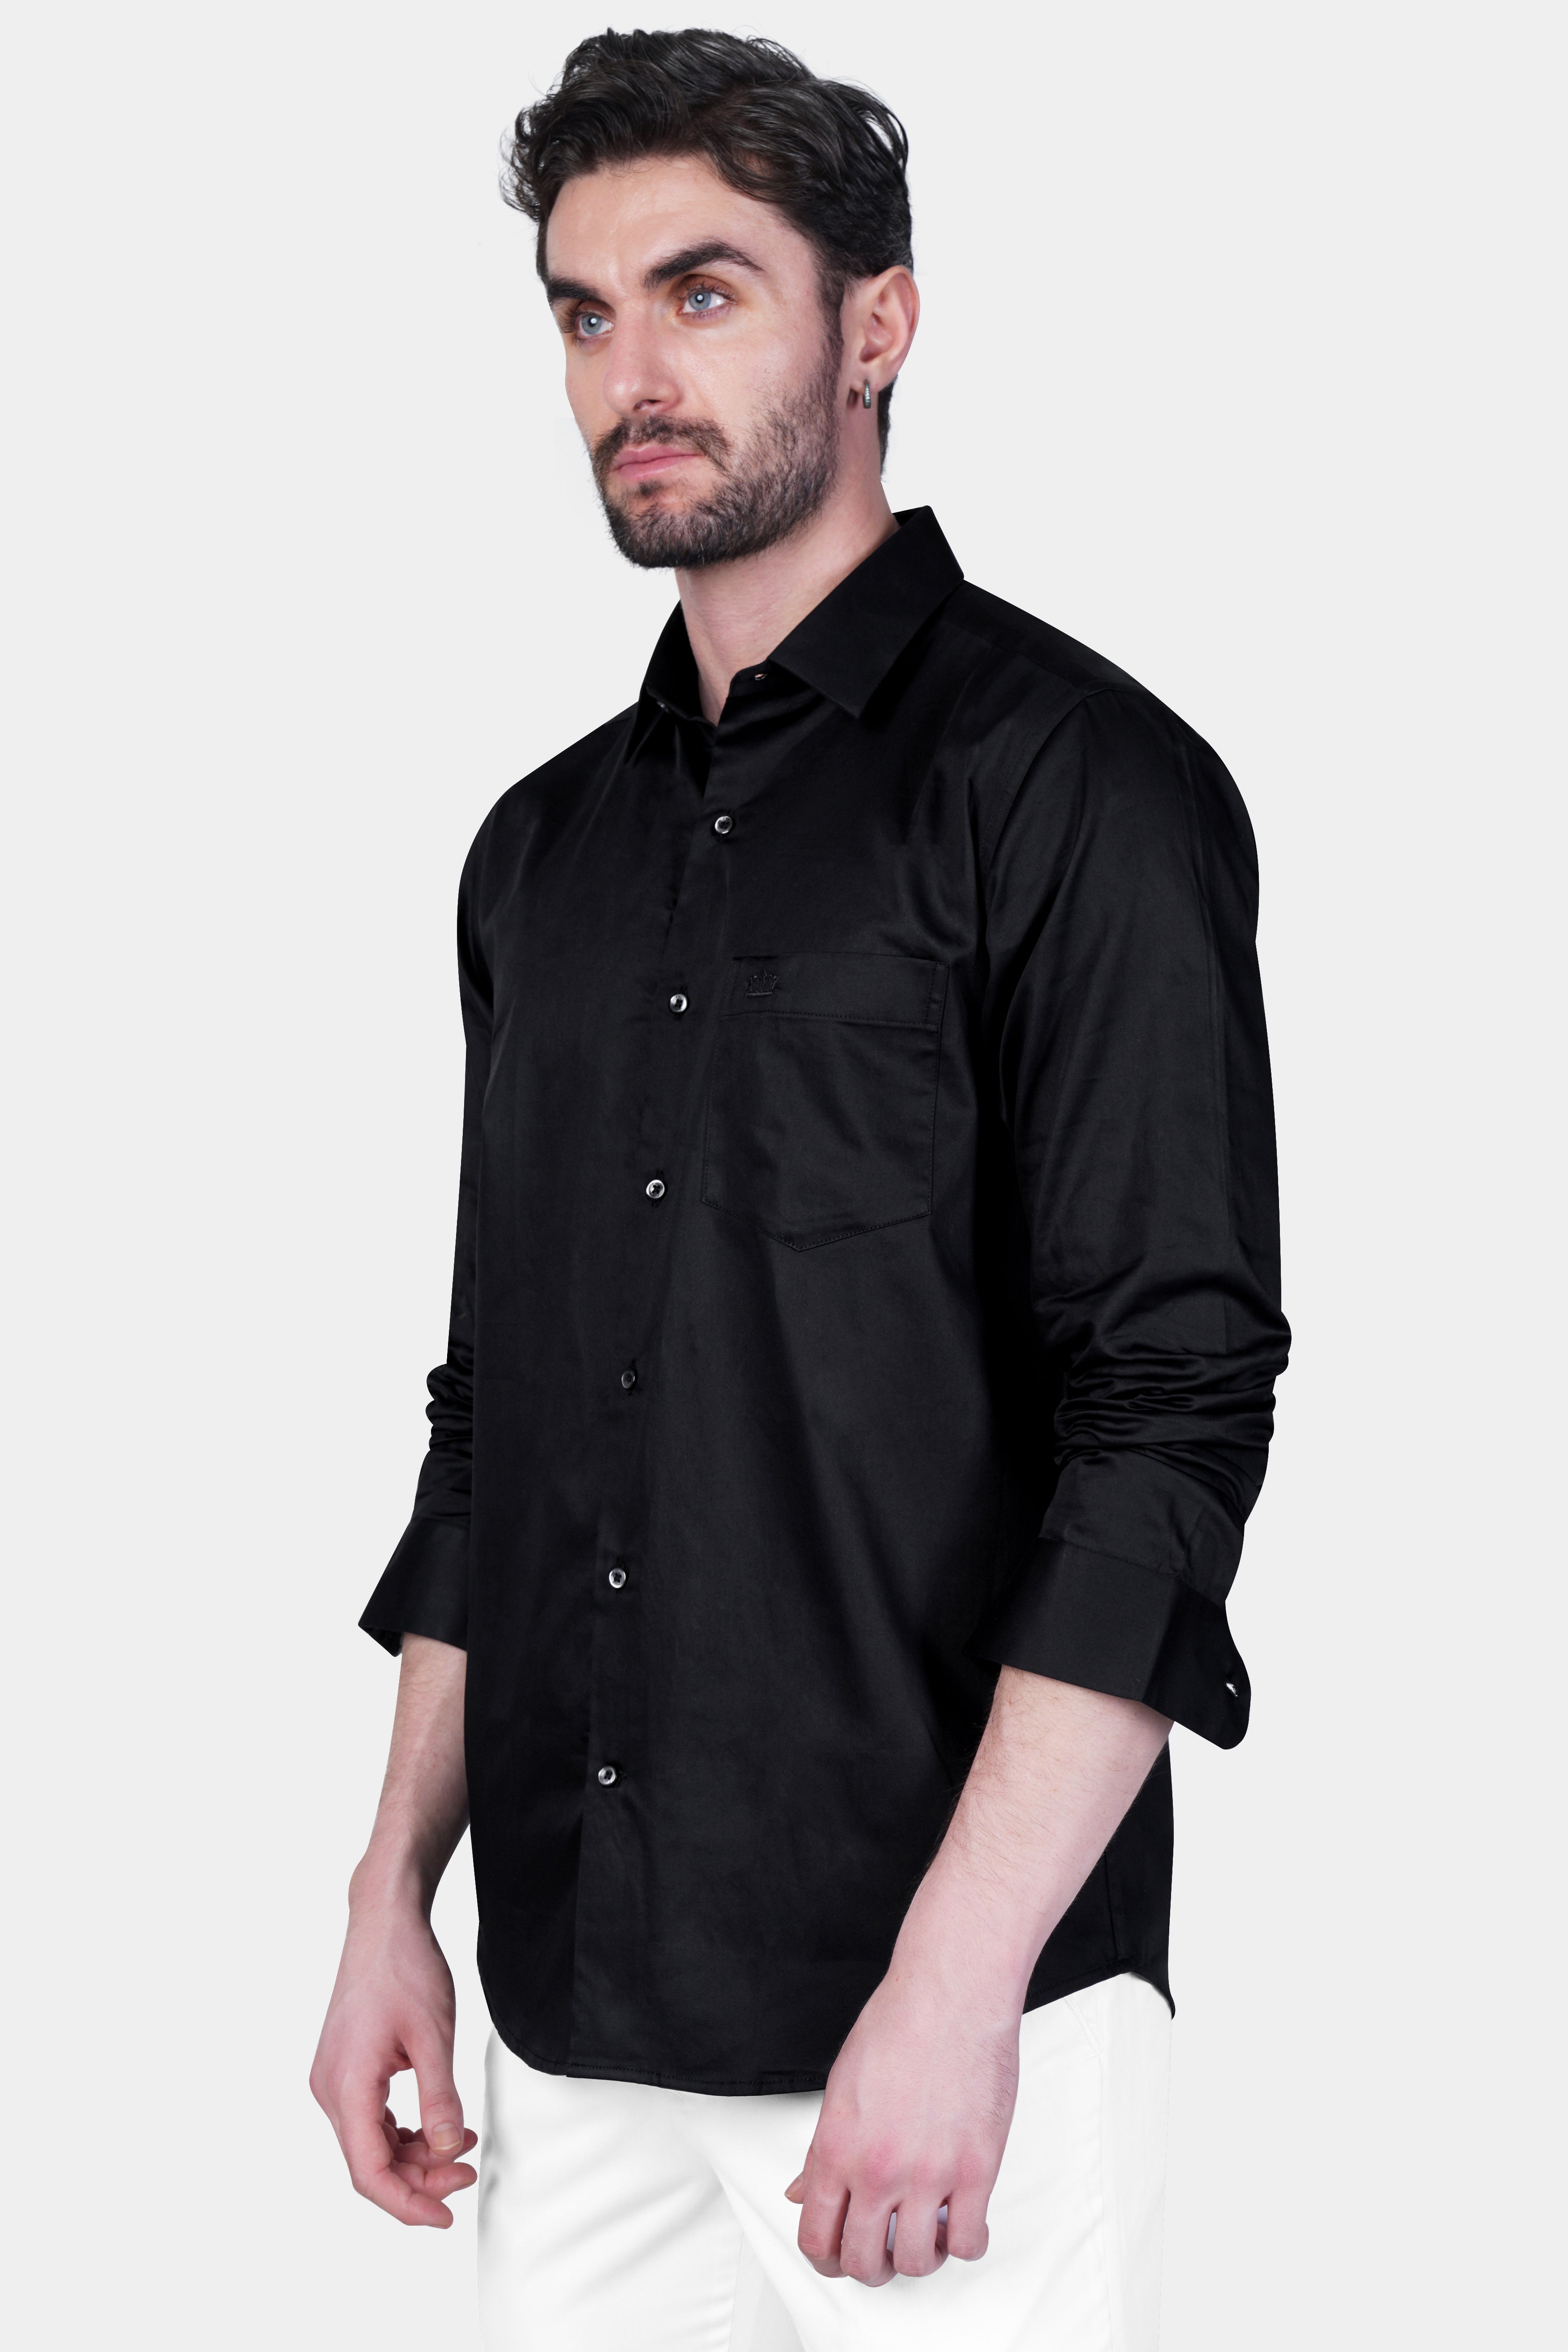 Shirt - Black cotton shirt